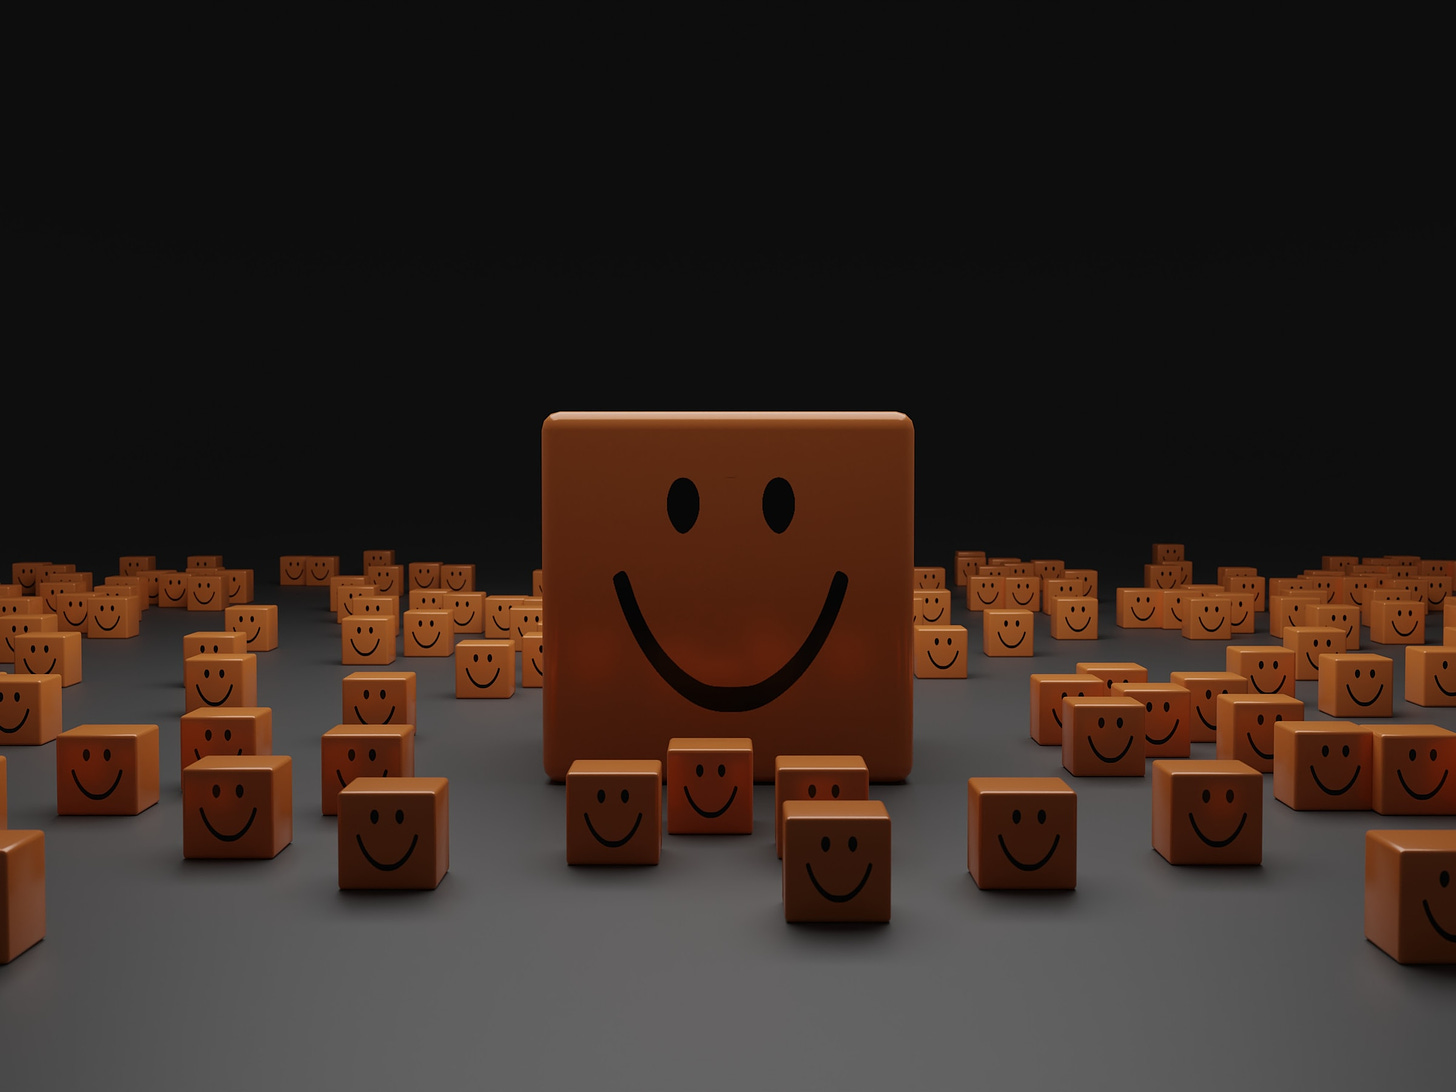 Sfondo nero e superficie orizzontale grigia su cui poggiano sparsi tanti cubi arancio con la faccia rivolta verso chi guarda che rappresenta una bocca sorridente e due occhi. Al centro c'è uno di questi blocchi grande quattro volte gli altri.